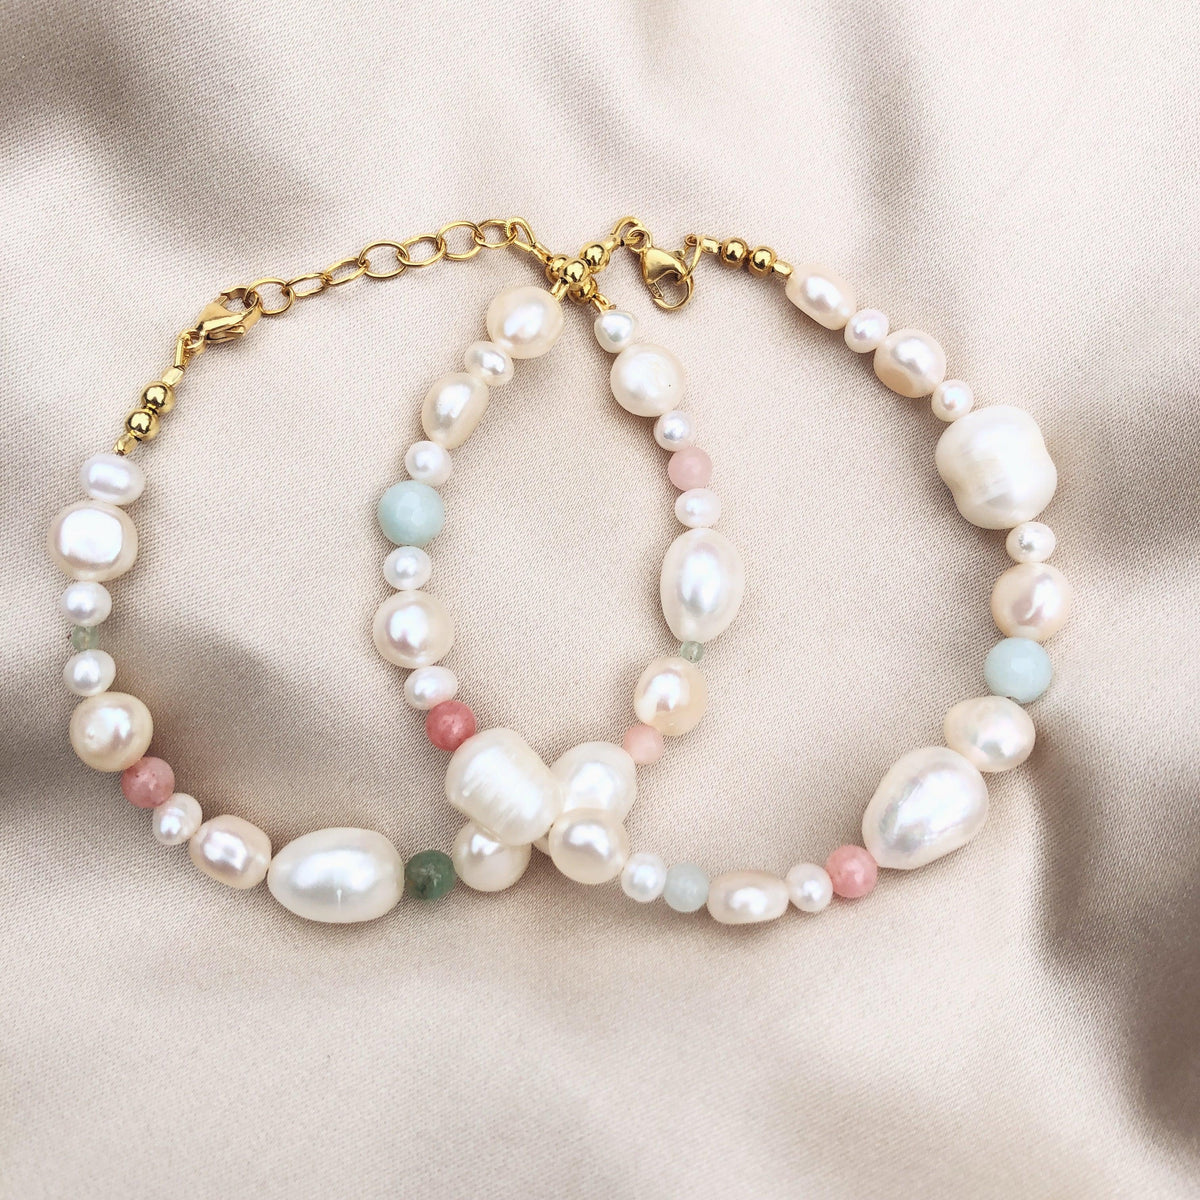 RAW Copenhagen pearl bracelet|Pearl and gemstone bracelet